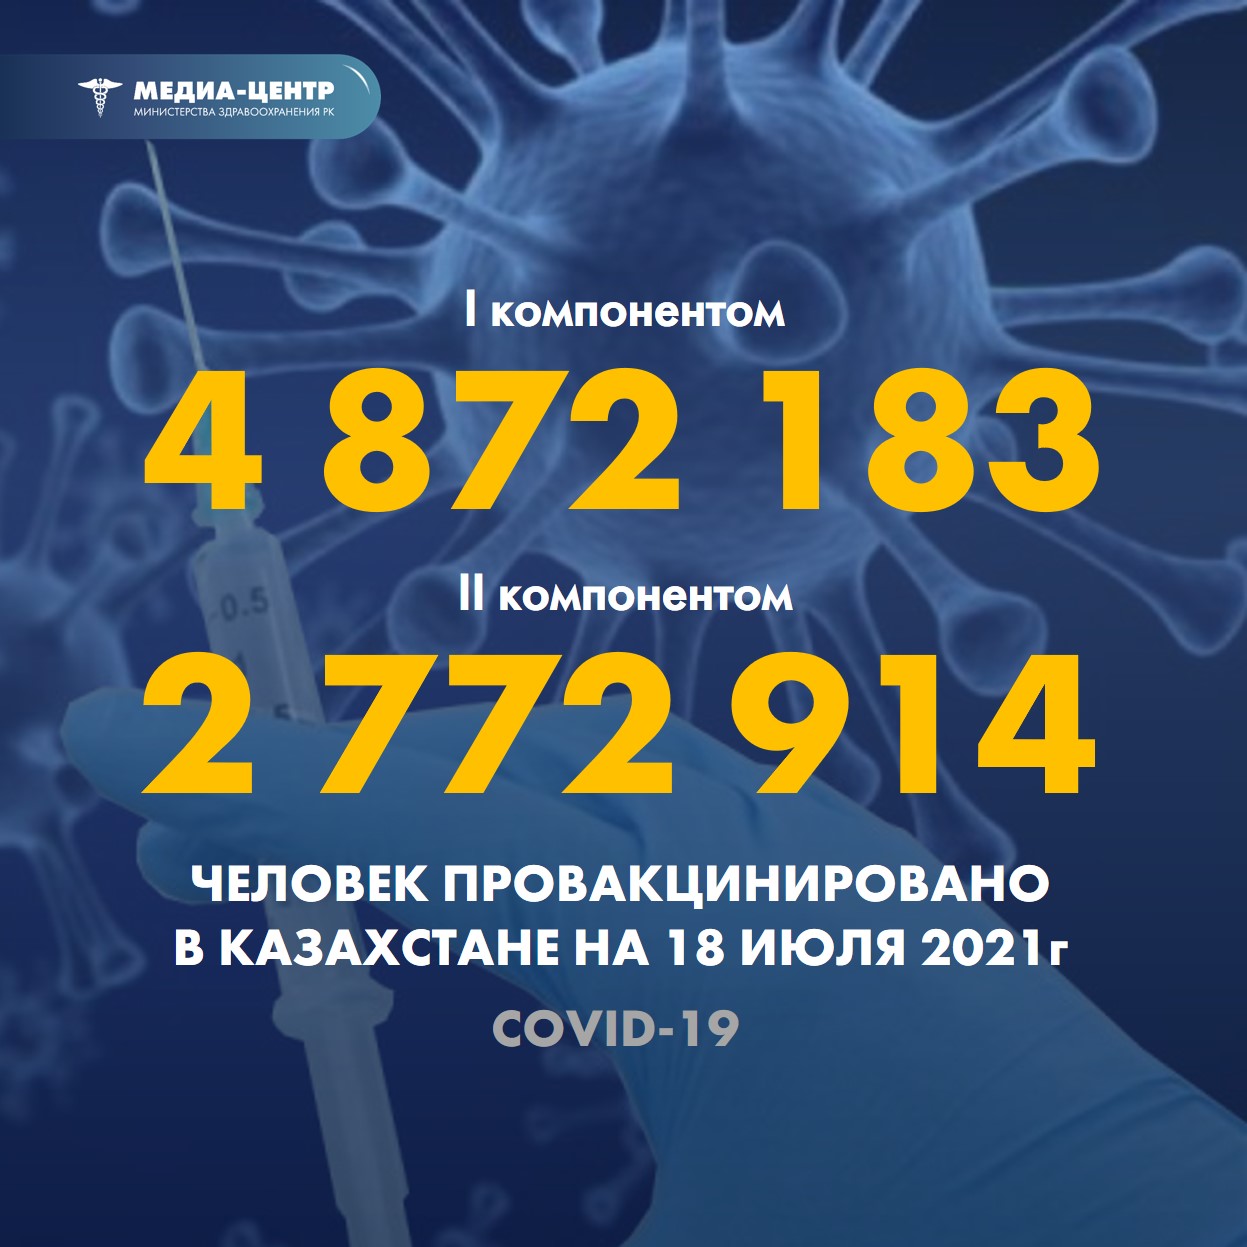 Информация о проведении вакцинации населения против КВИ на 18.07.2021 г. в разрезе регионов